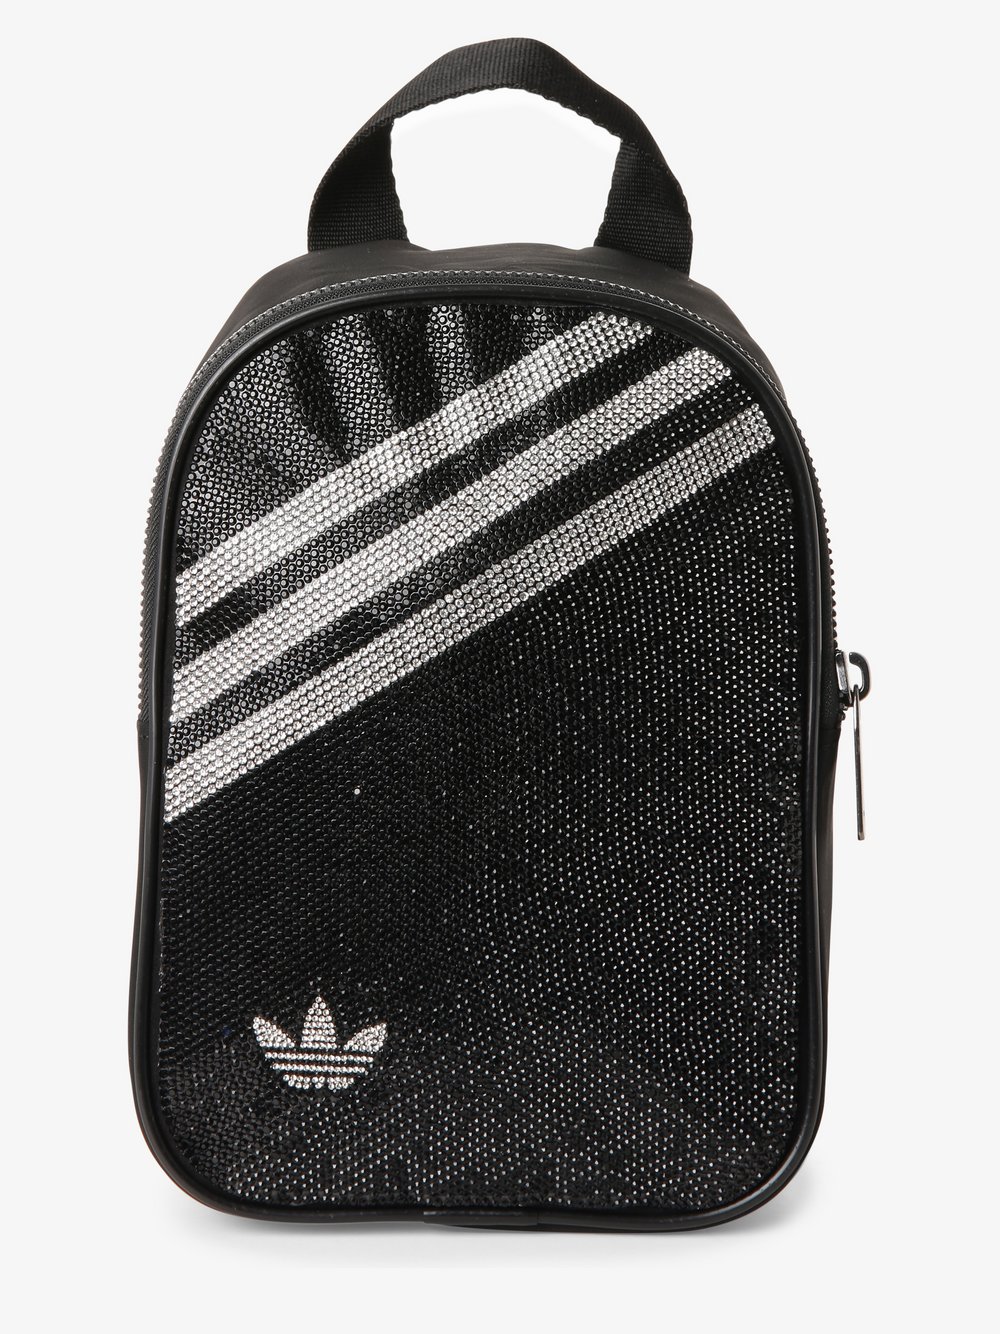 Adidas Originals - Plecak damski, czarny